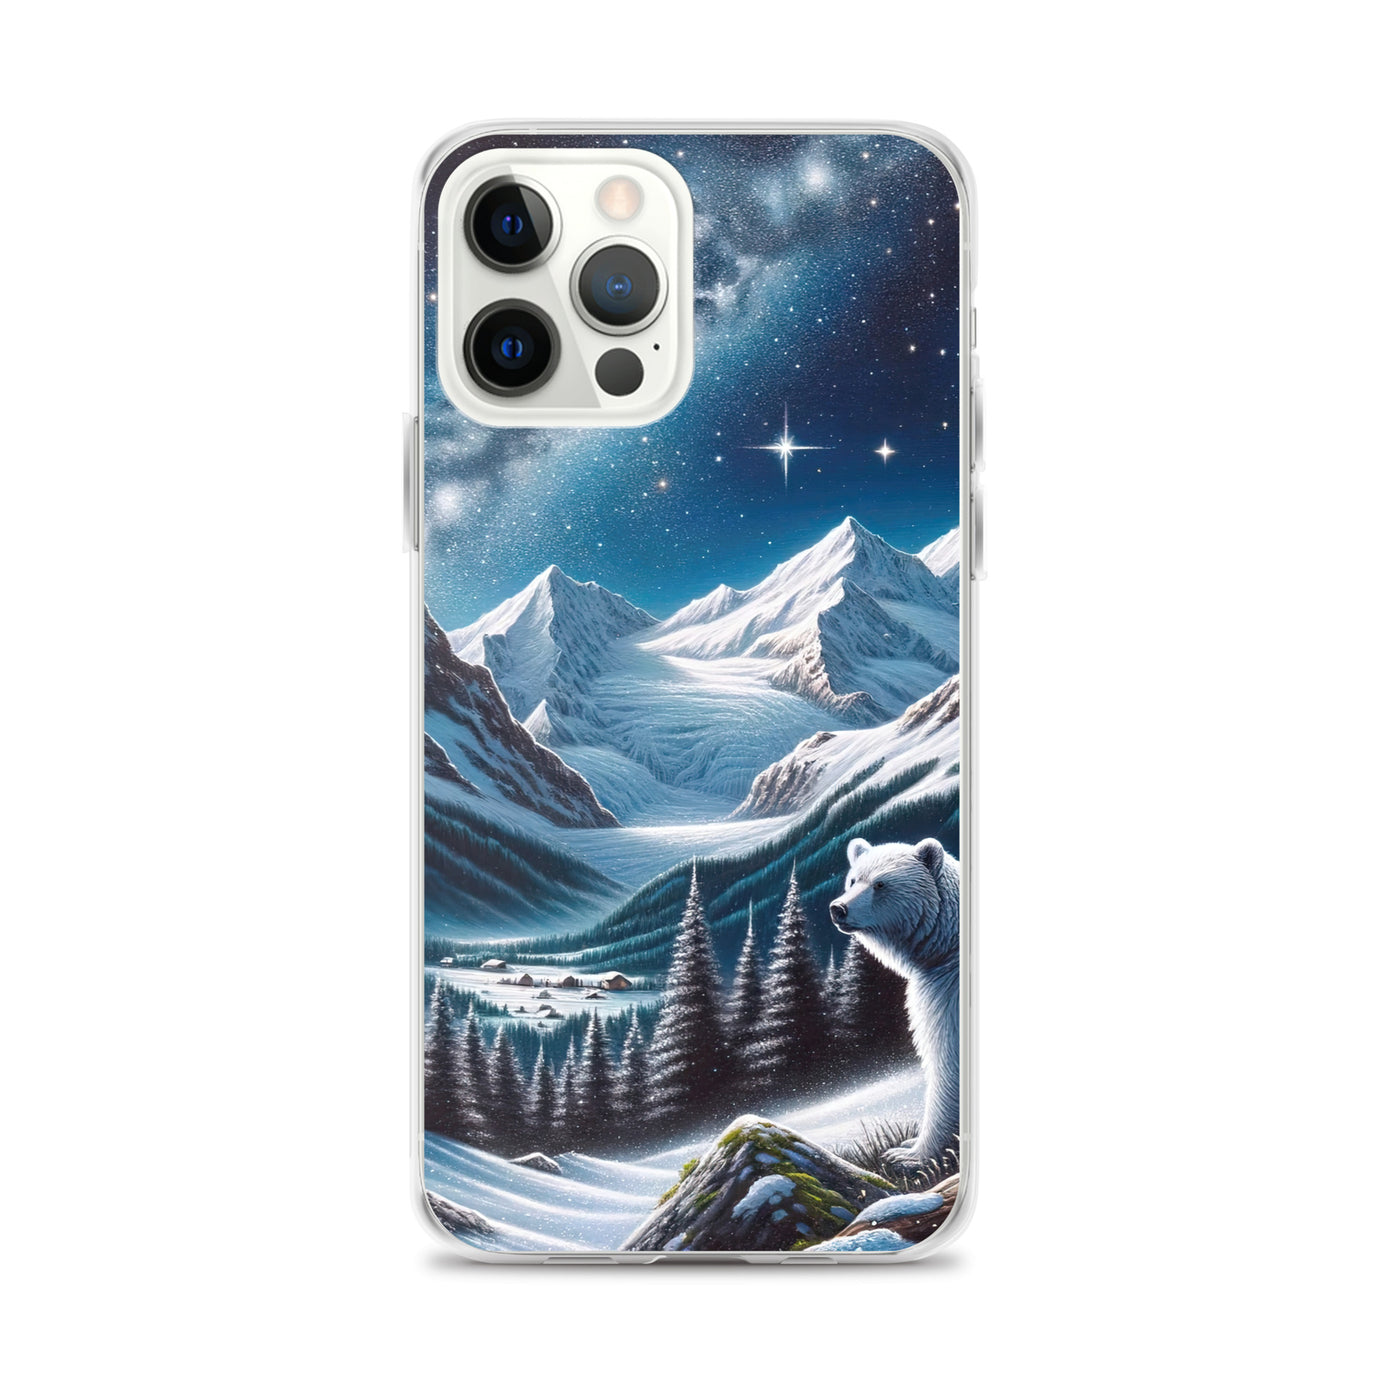 Sternennacht und Eisbär: Acrylgemälde mit Milchstraße, Alpen und schneebedeckte Gipfel - iPhone Schutzhülle (durchsichtig) camping xxx yyy zzz iPhone 12 Pro Max